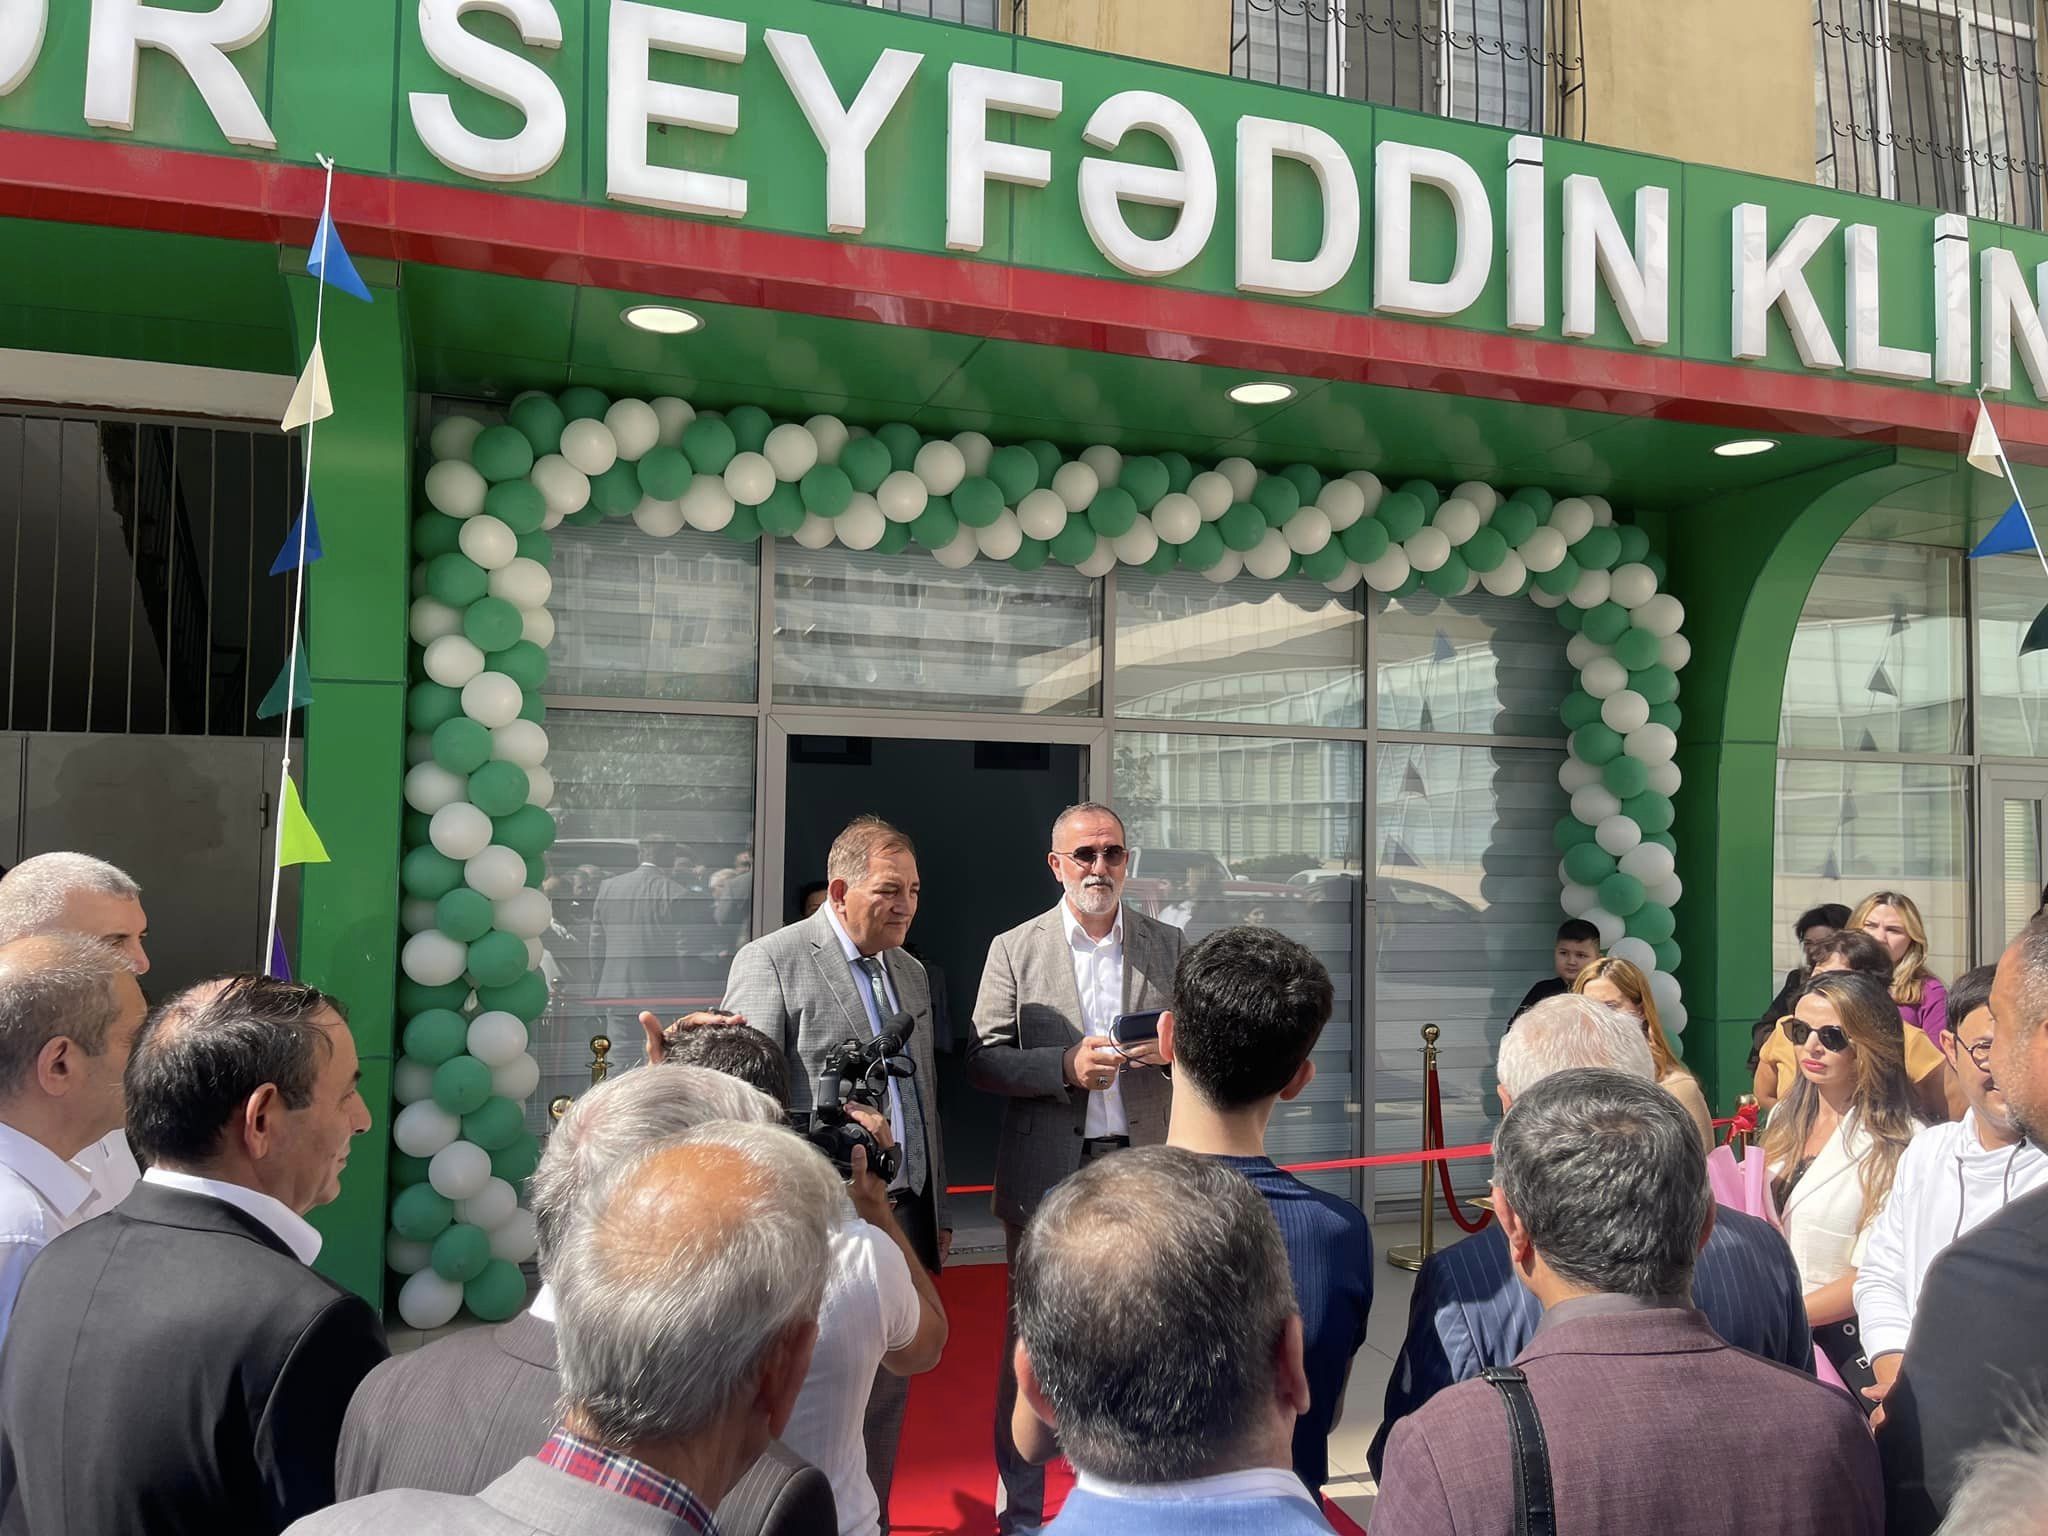 "Doktor Seyfəddin klinikası" açıldı -  Bizdə olan müalicə dünyada yoxdur